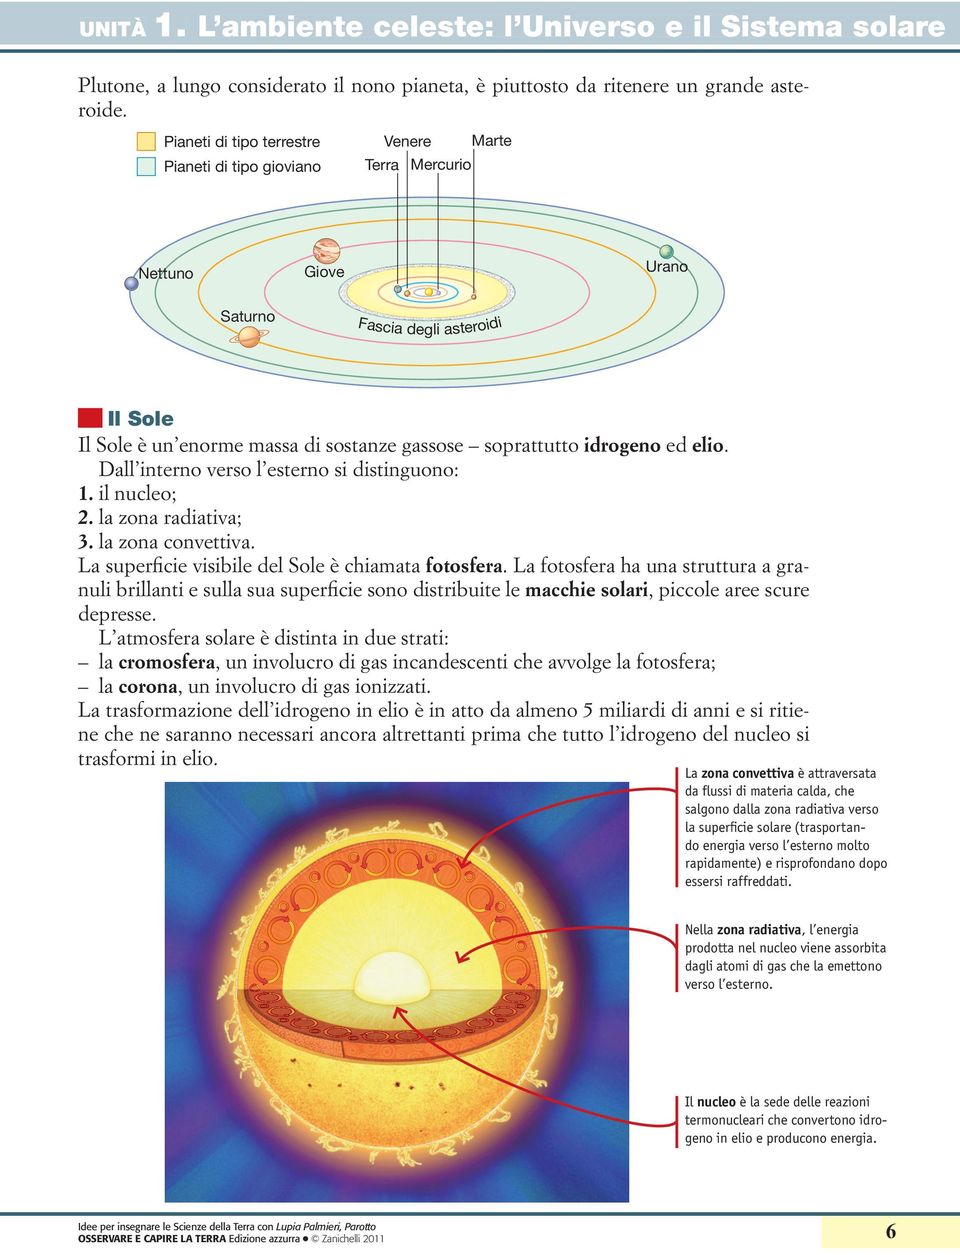 idrogeno ed elio. Dall interno verso l esterno si distinguono: 1. il nucleo; 2. la zona radiativa; 3. la zona convettiva. La superficie visibile del Sole è chiamata fotosfera.